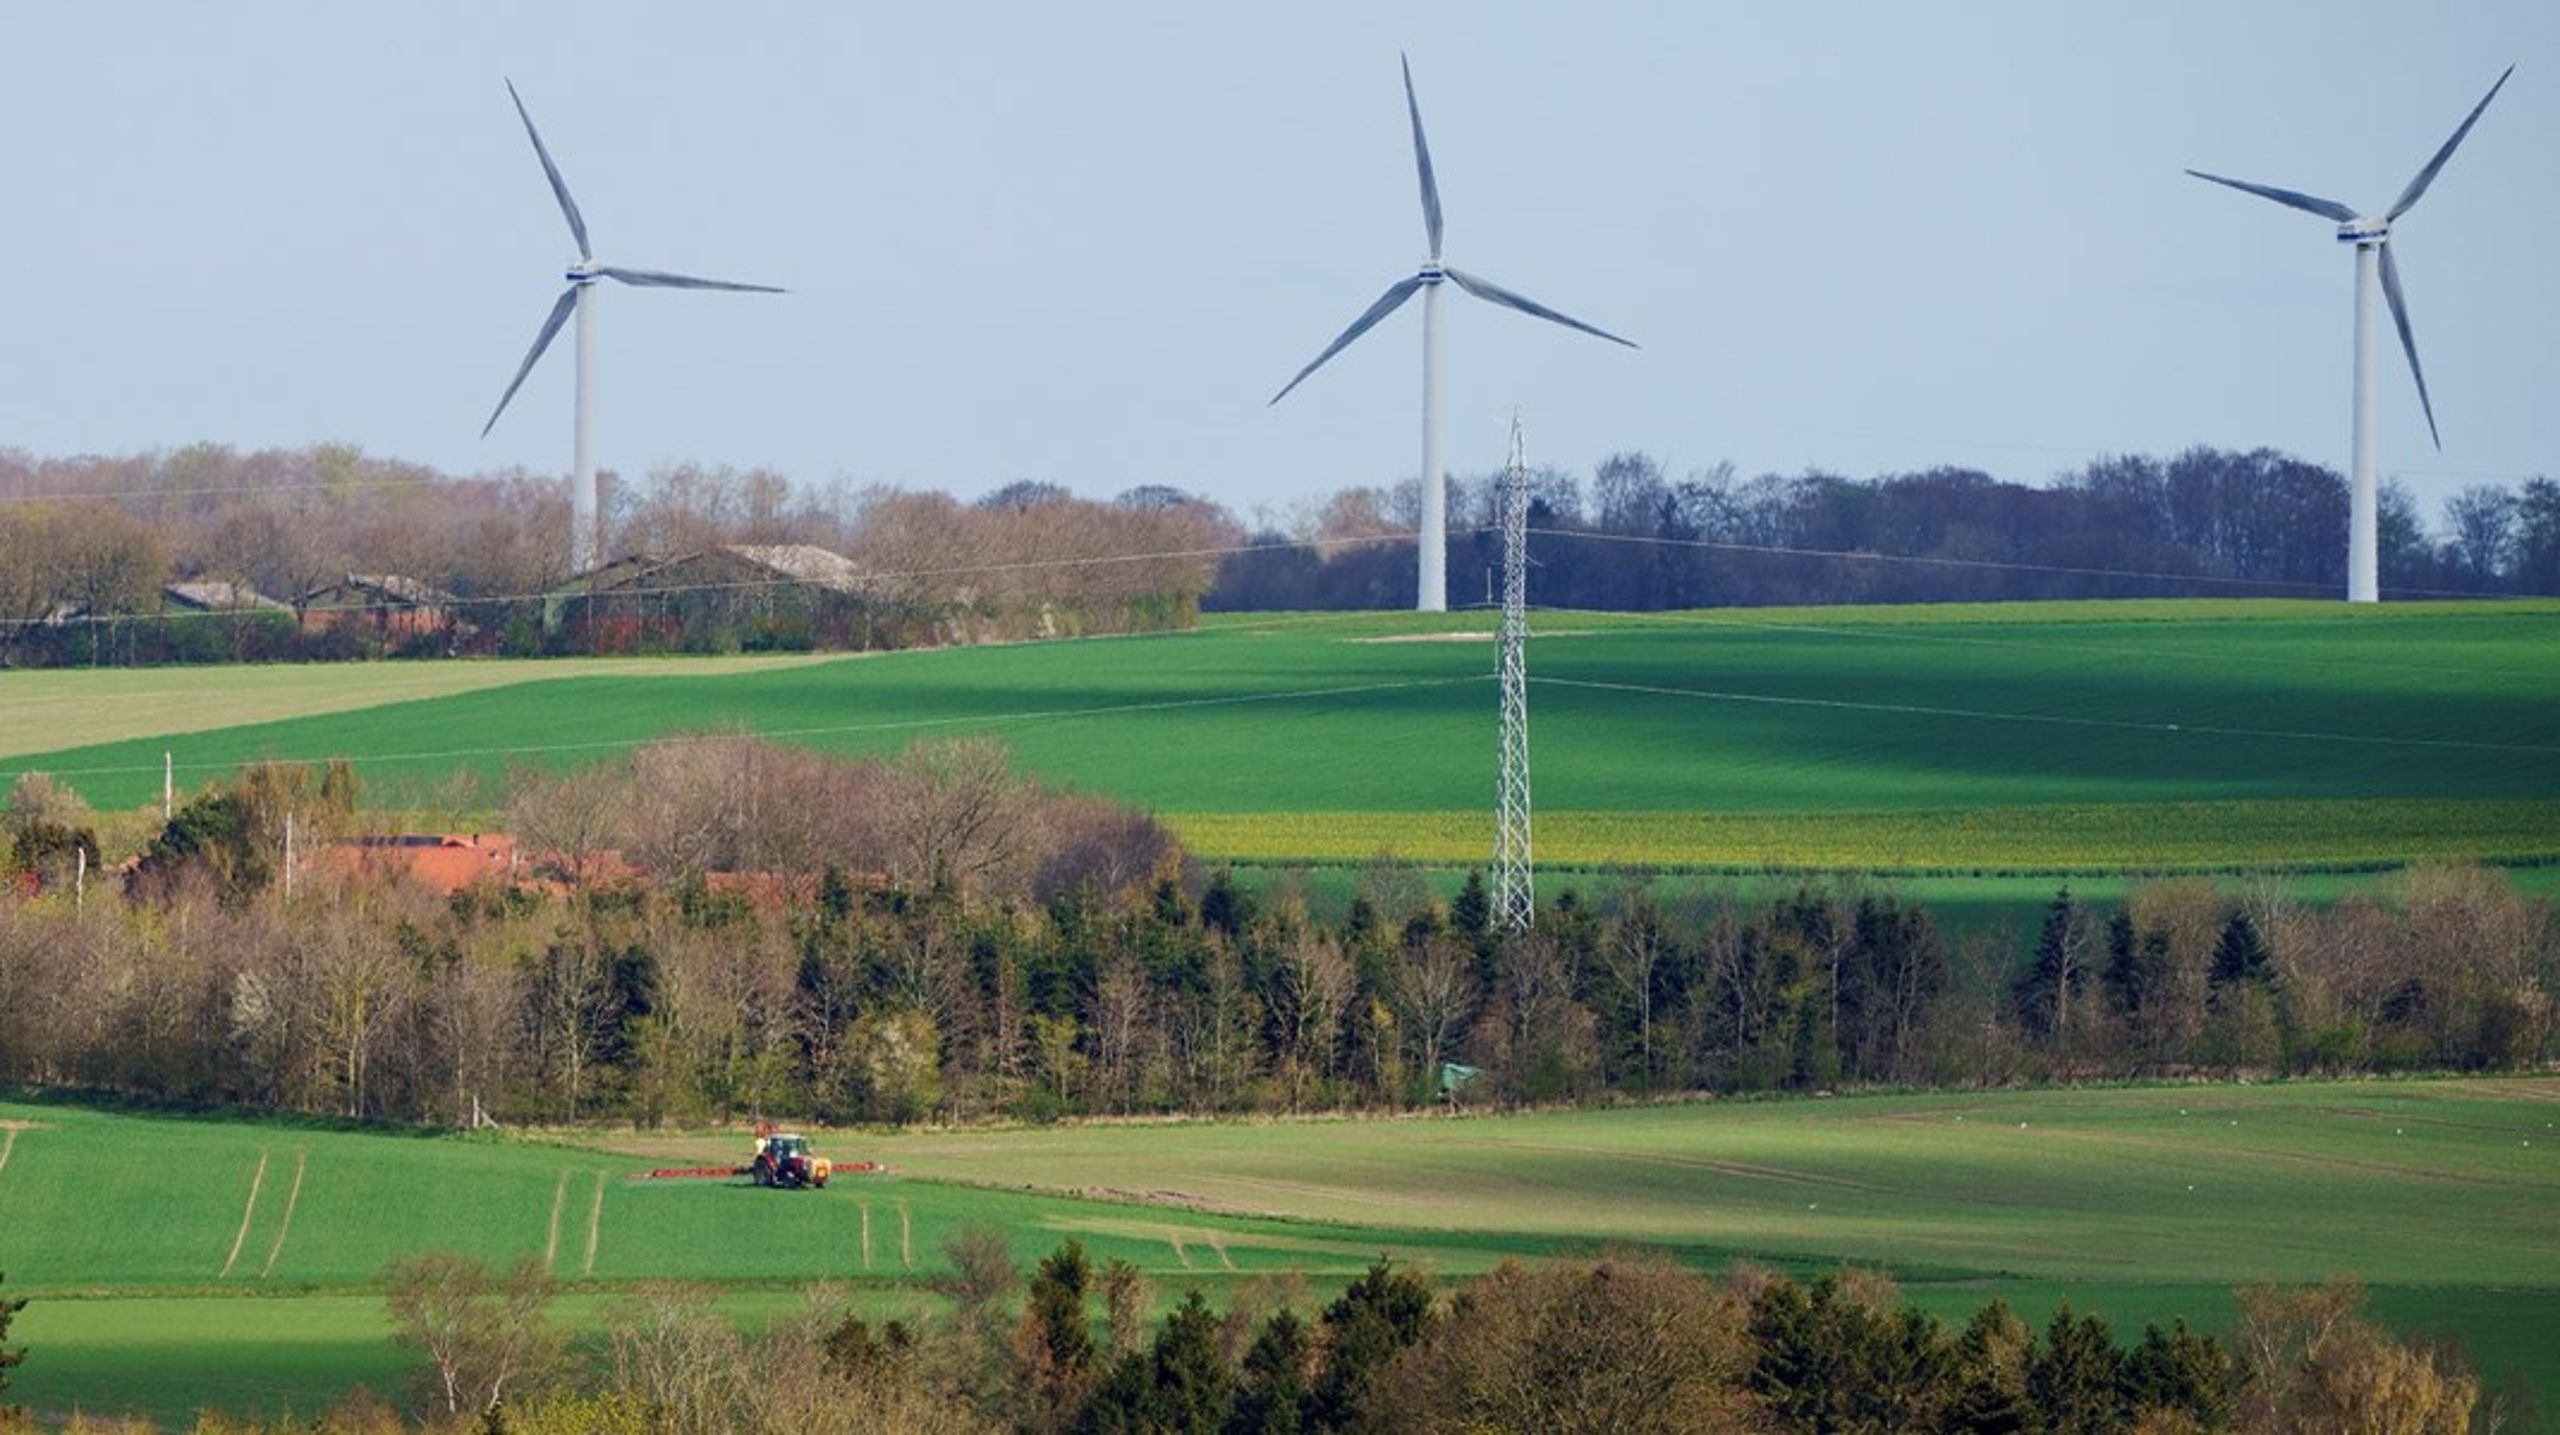 Det bliver sværere at sætte flere vindmøller op, hvis EU-kommissionen får deres nye naturgenopretnings-forslag igennem, skriver Erling Bonnesen.&nbsp;